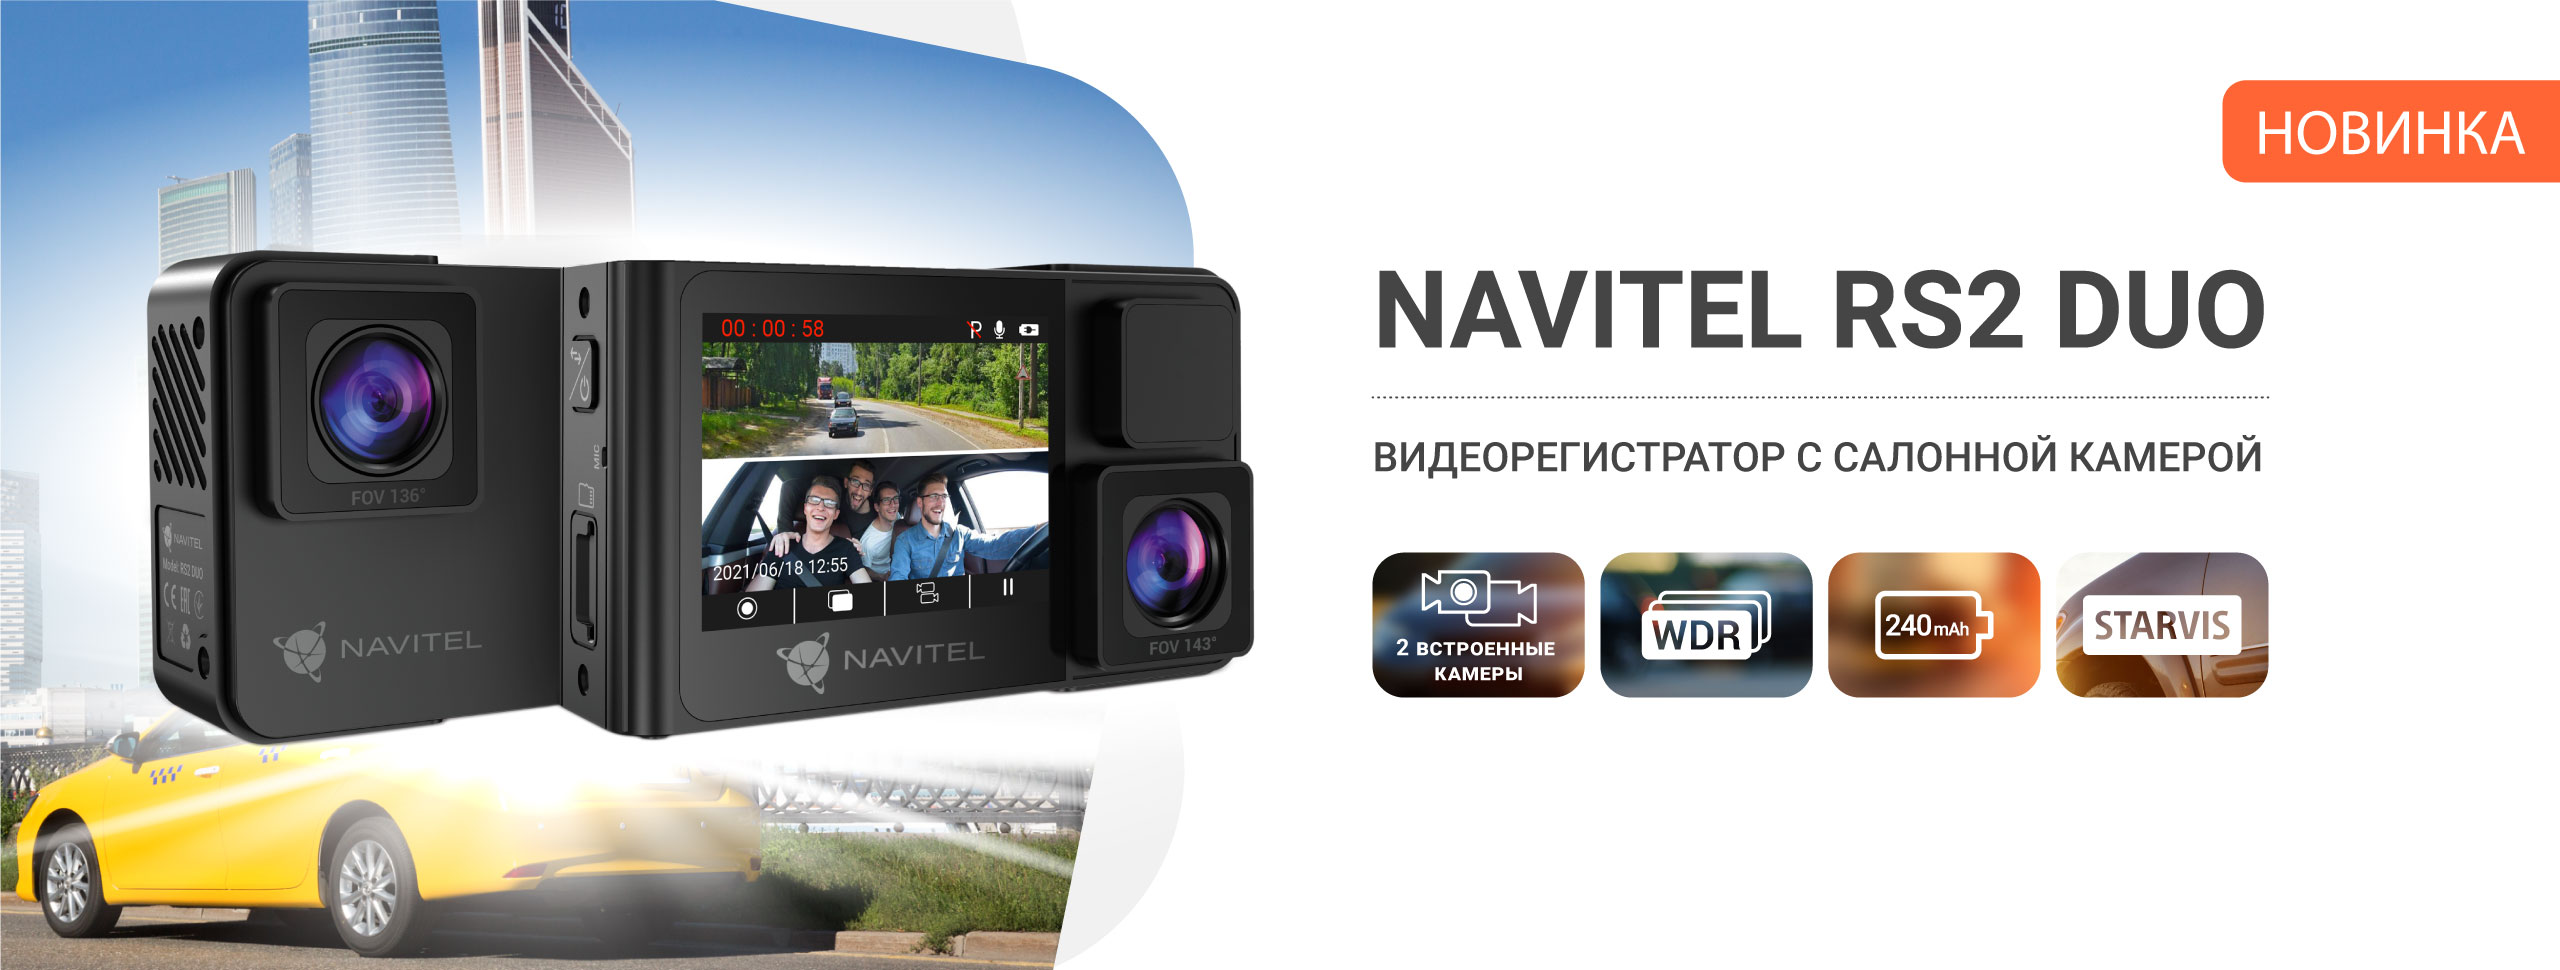 Двухканальный видеорегистратор NAVITEL RS2 DUO